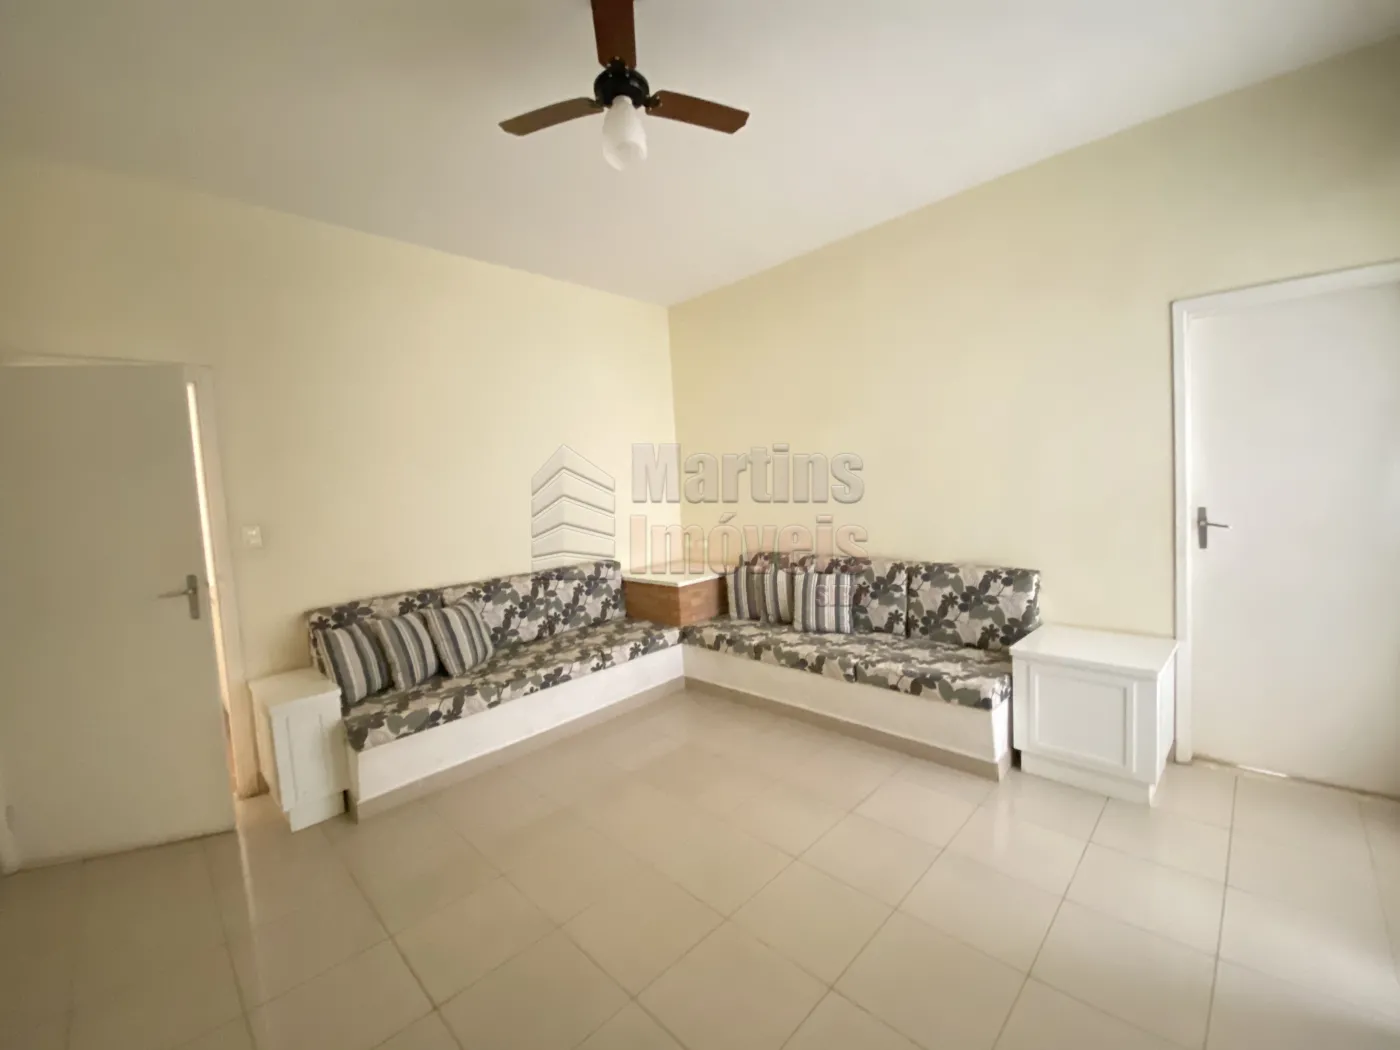 Alugar Apartamento / Sobreloja em São João da Boa Vista R$ 2.000,00 - Foto 5